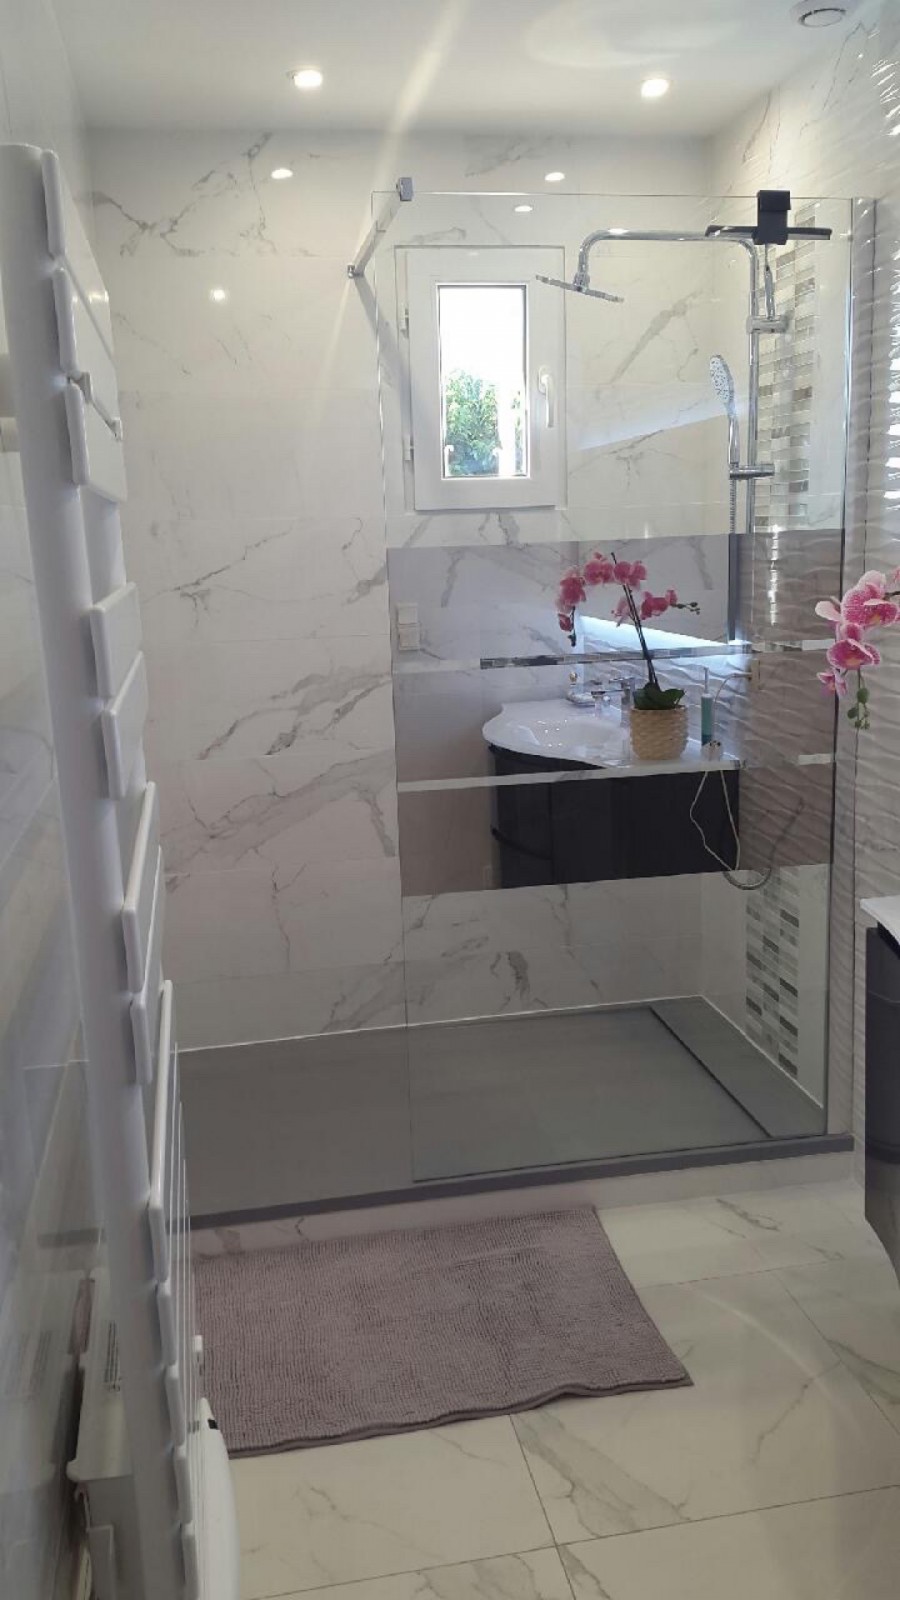 Réalisation de la pose d’un carrelage pour salle de bain pour une maison moderne à Marignane